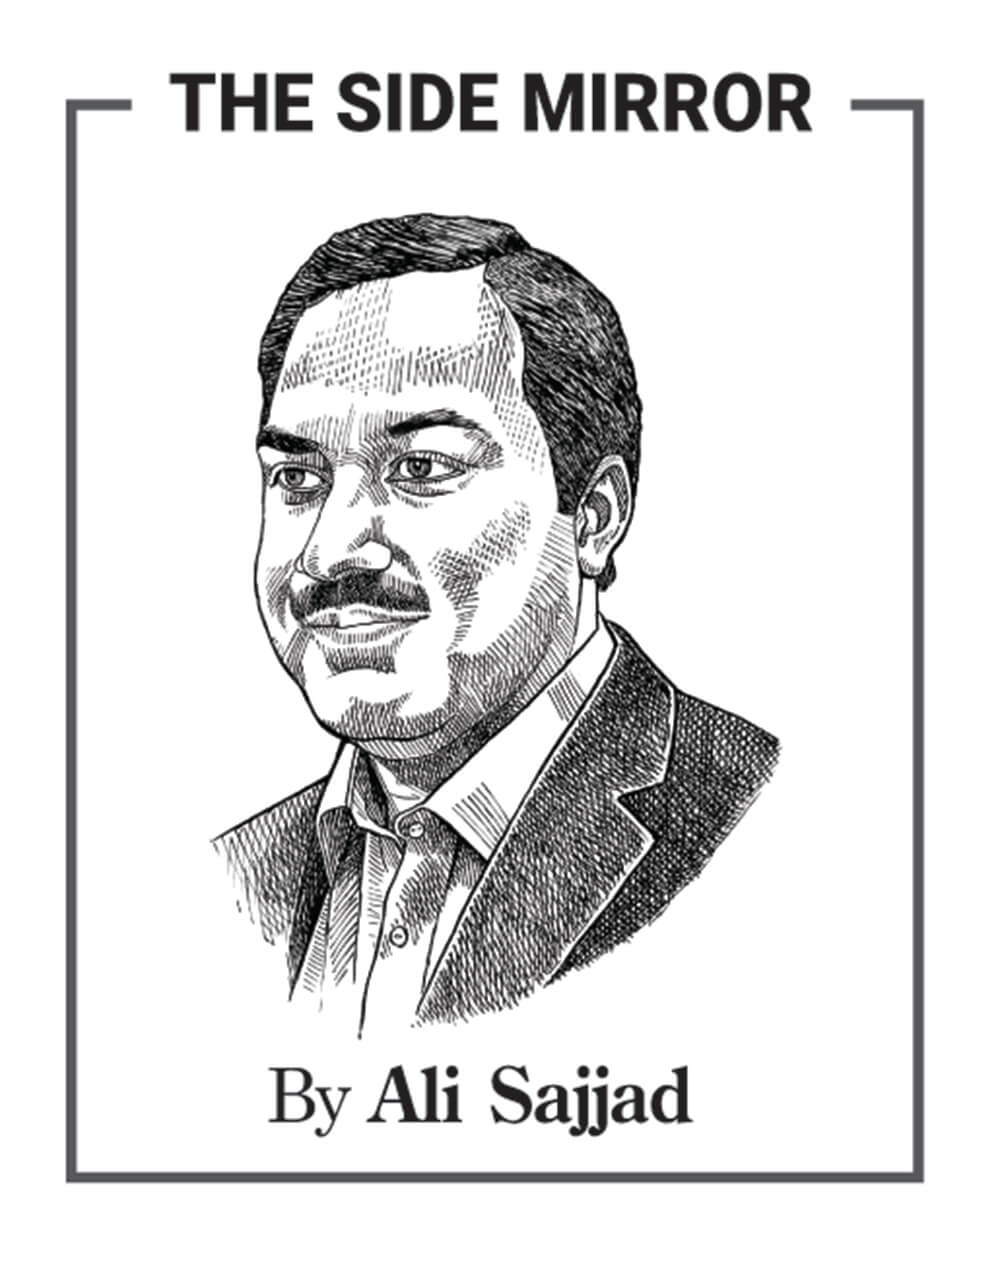 Ali Sajjad